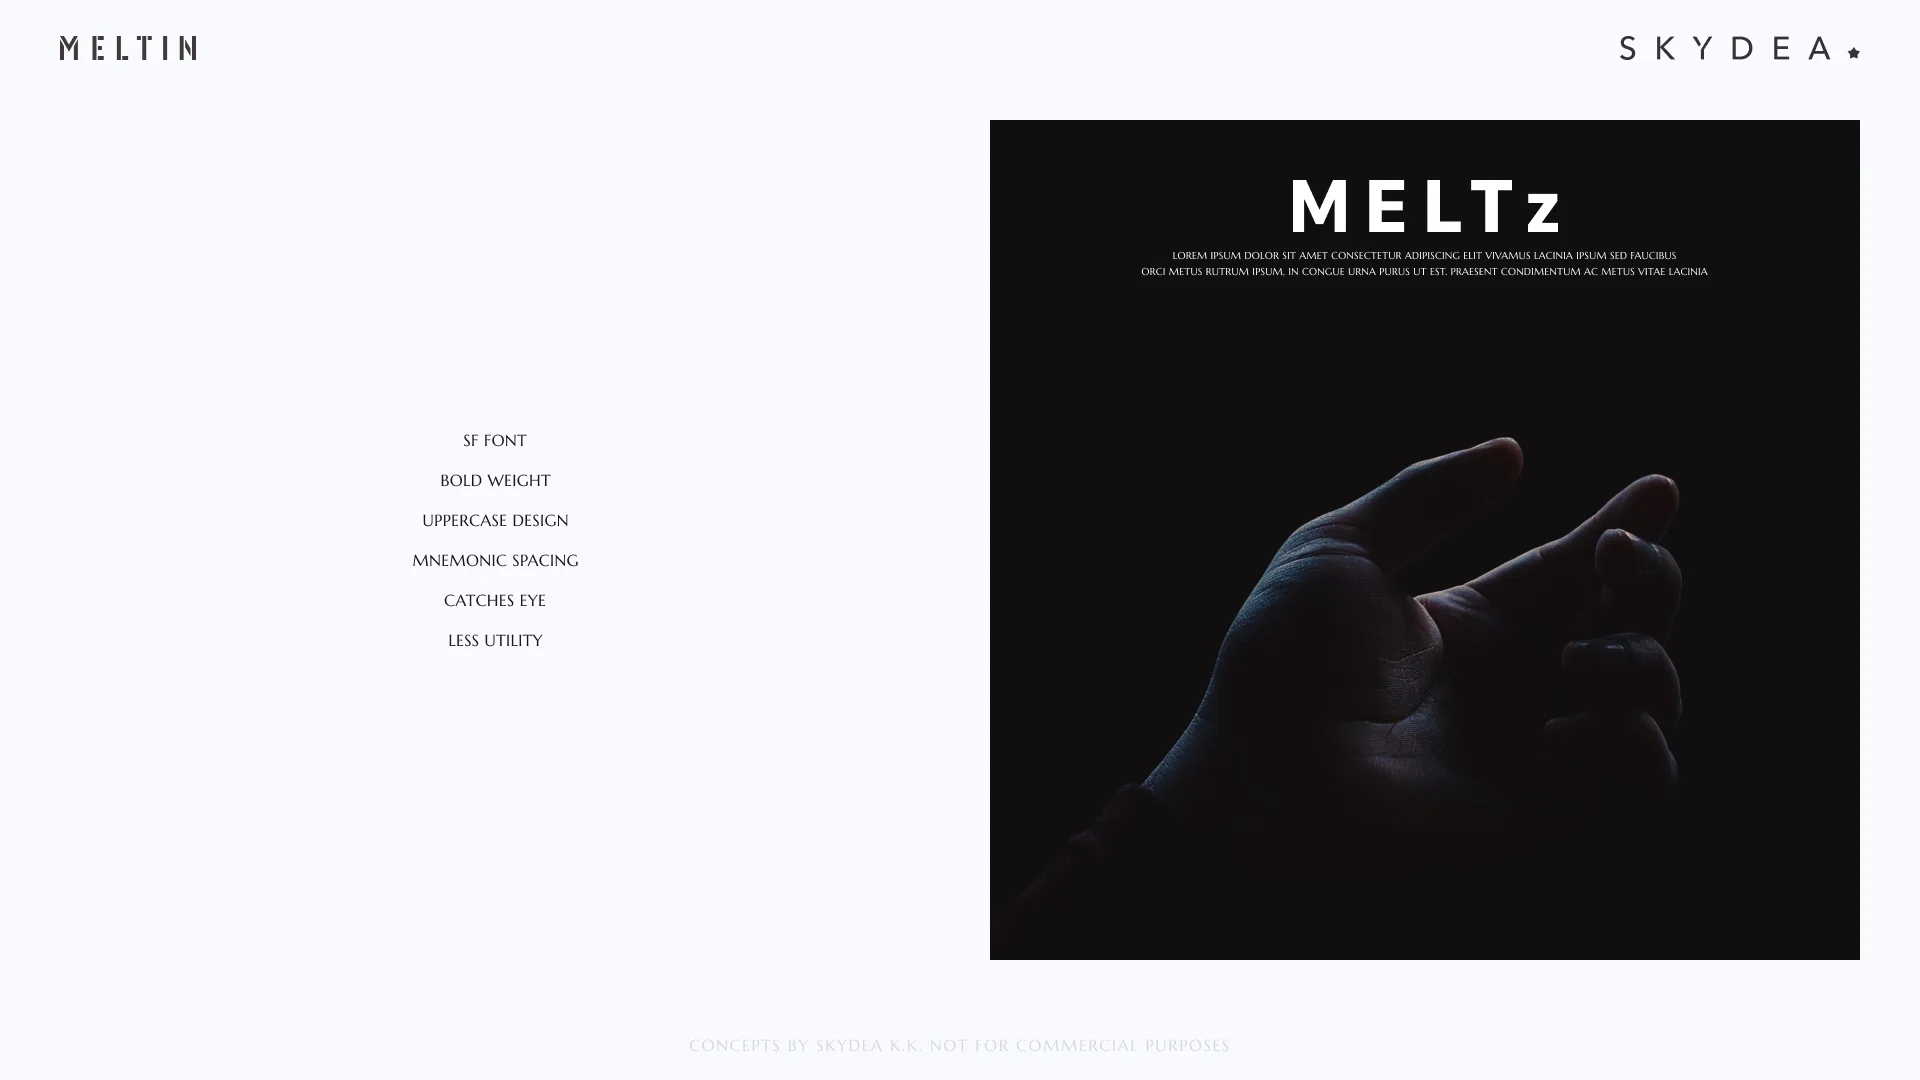 MELTz brand explorations